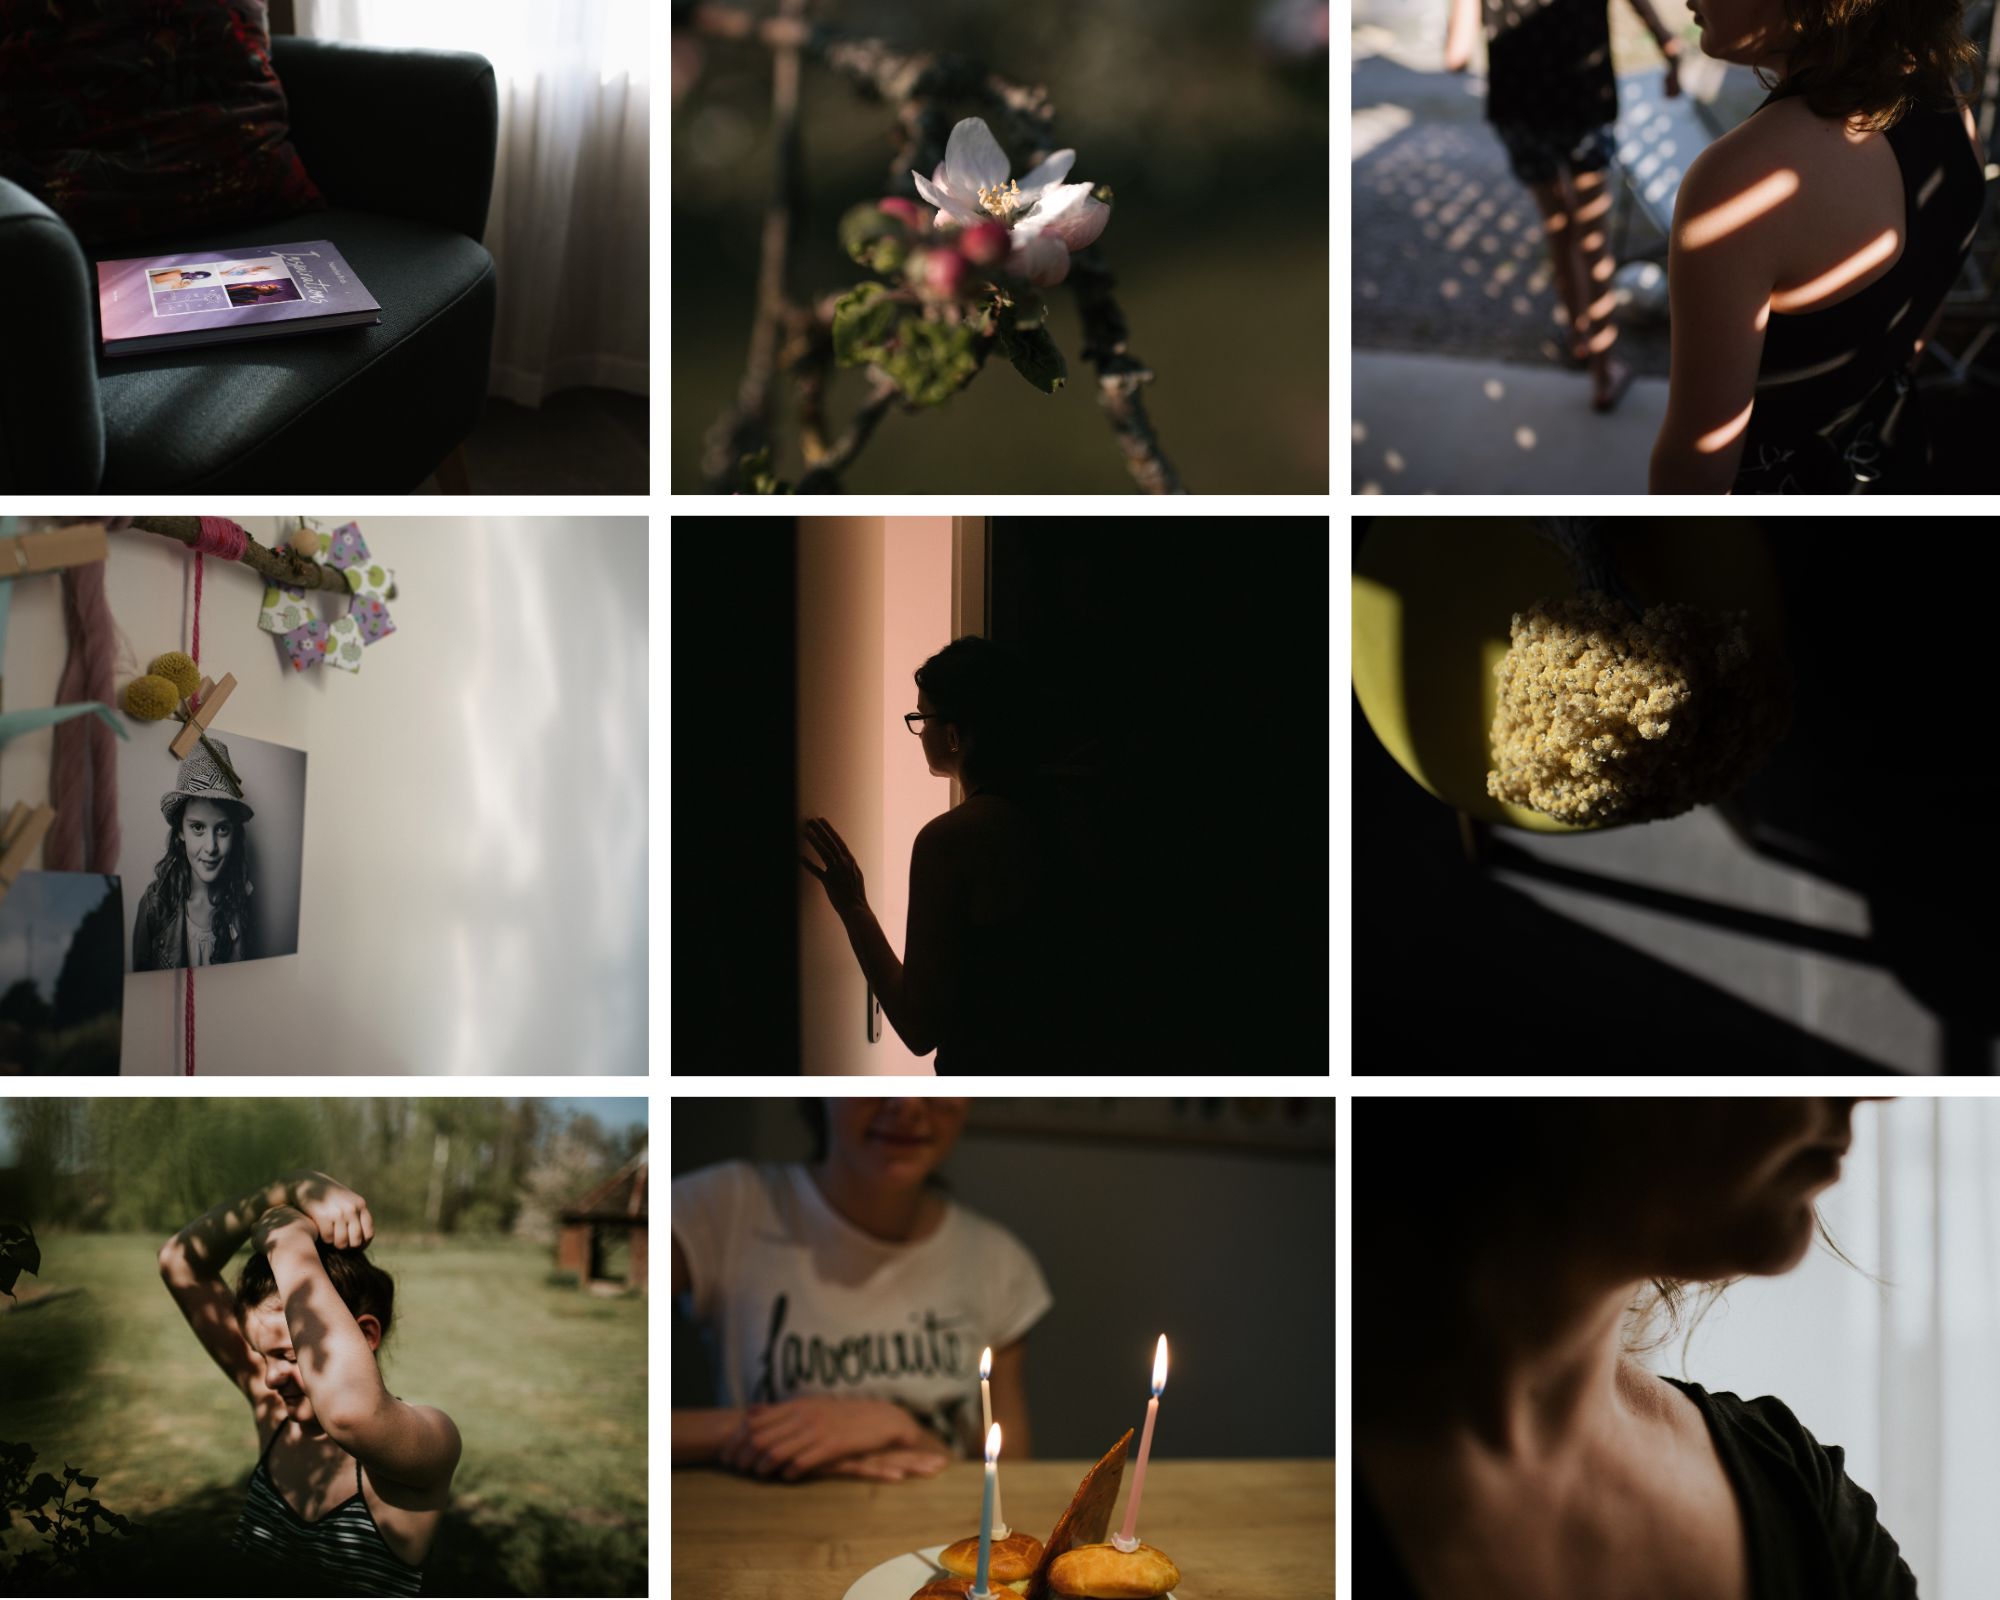 Le projet photo #100daysoflumière2020 par Estelle R Photographie